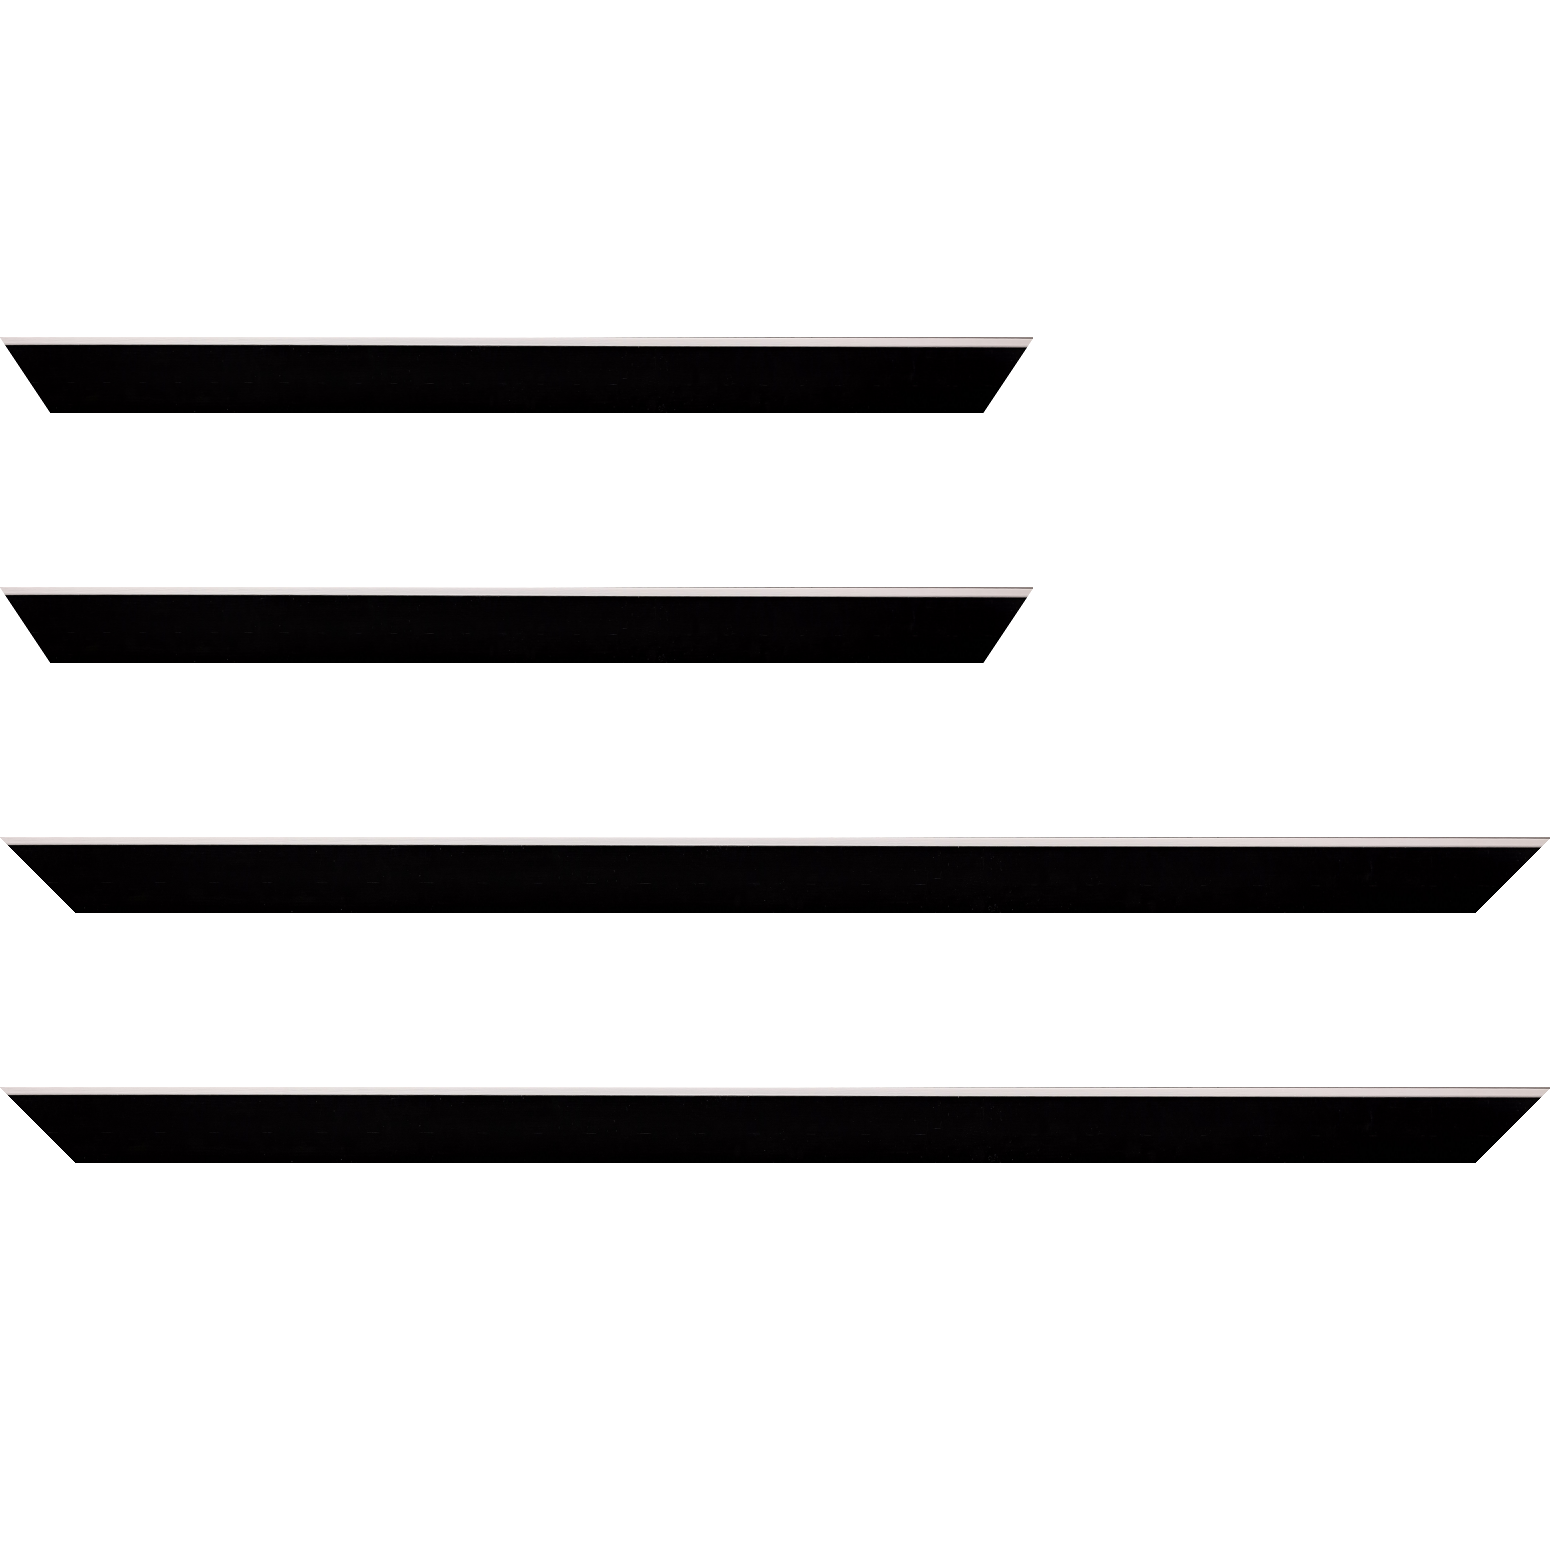 Baguette bois profil arrondi en pente plongeant largeur 2.4cm couleur noir satiné,veine du bois  apparent (pin) , angle du cadre extérieur filet argent chromé - 35x24